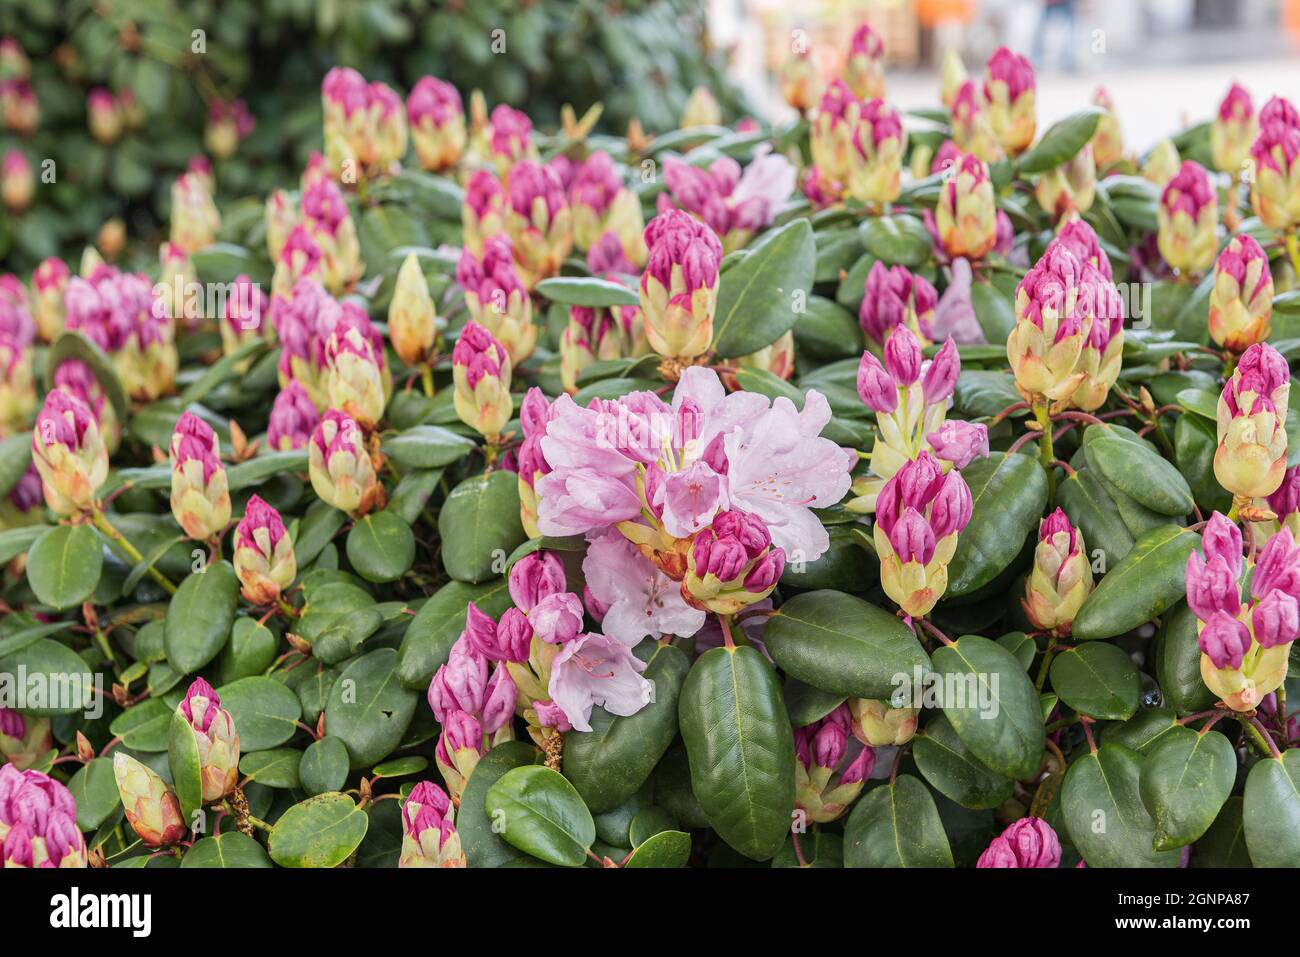 rhododendron (Rhododendron 'Vater Boehlje', Rhododendron Vater Boehlje), blooming, cultivar, cultvar Vater Boehlje Stock Photo